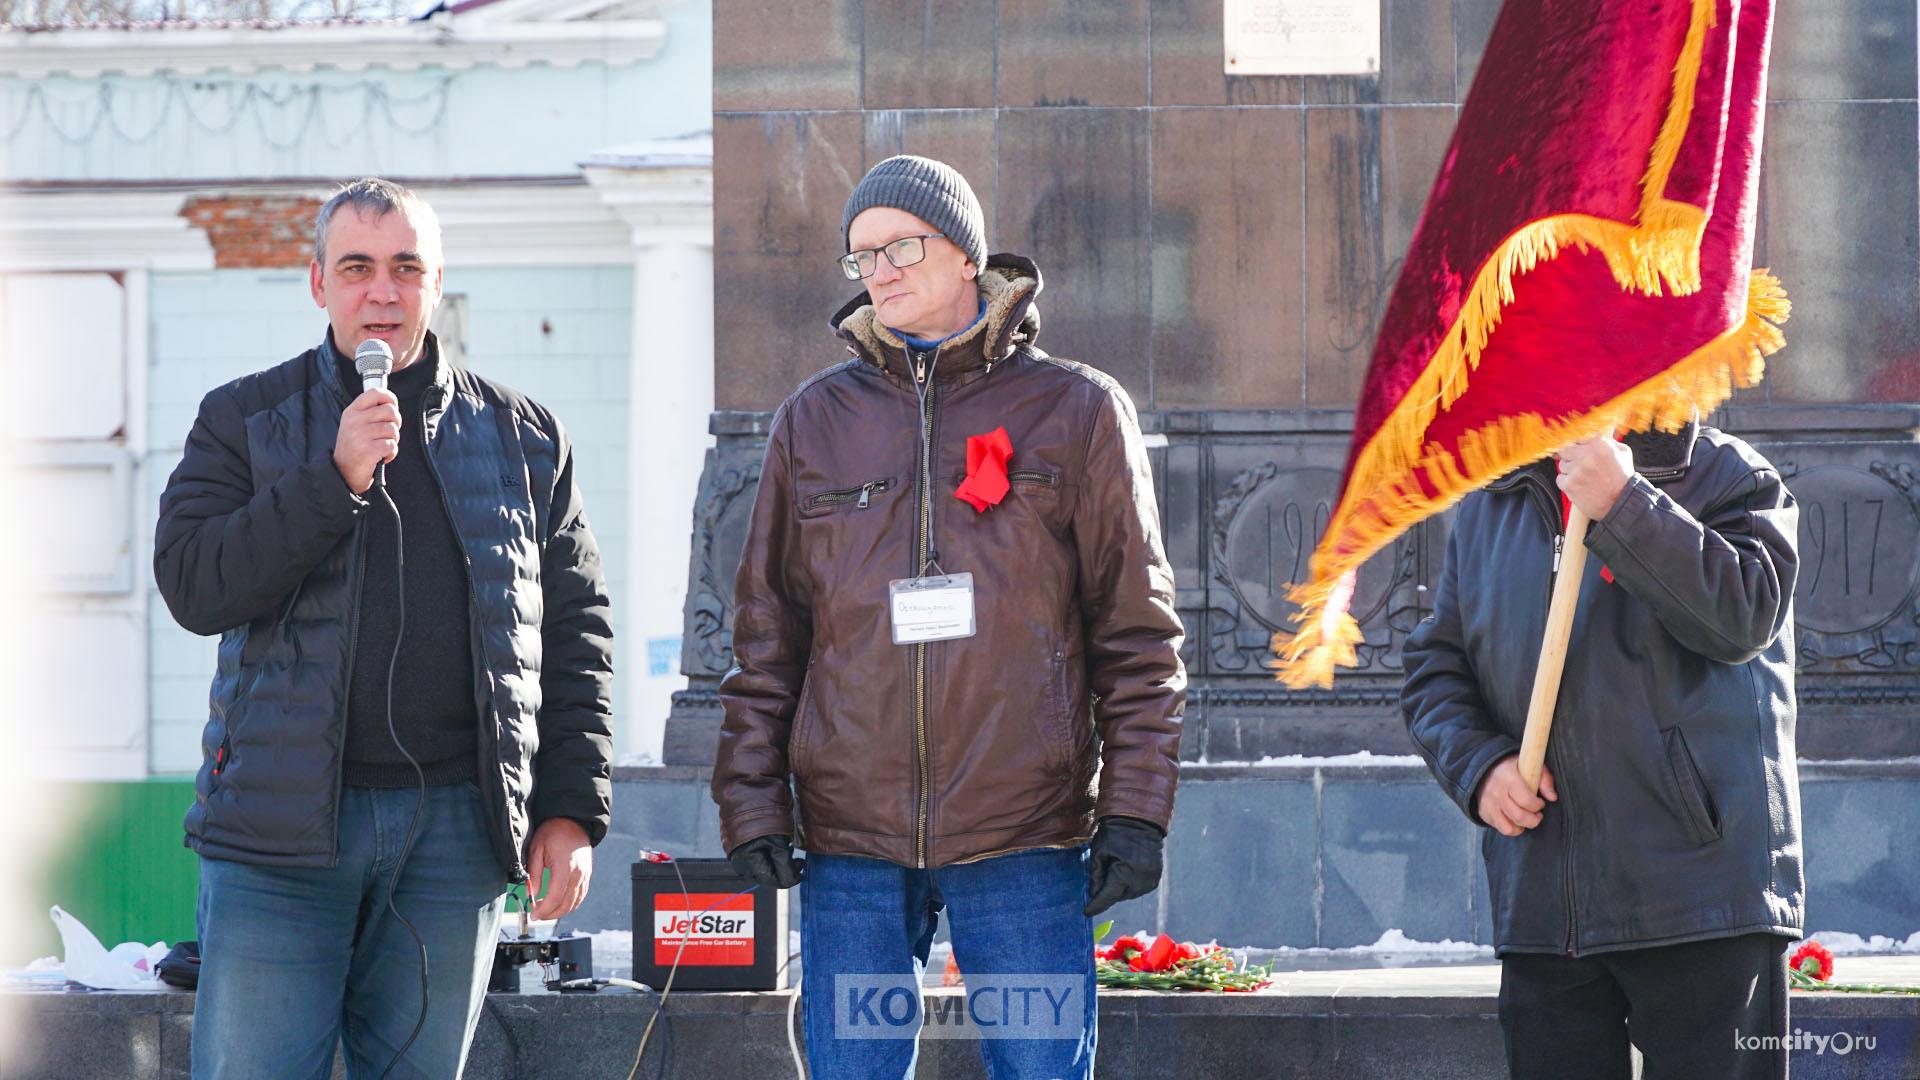 Митинг в годовщину Великой Октябрьской революции прошёл на площади Ленина